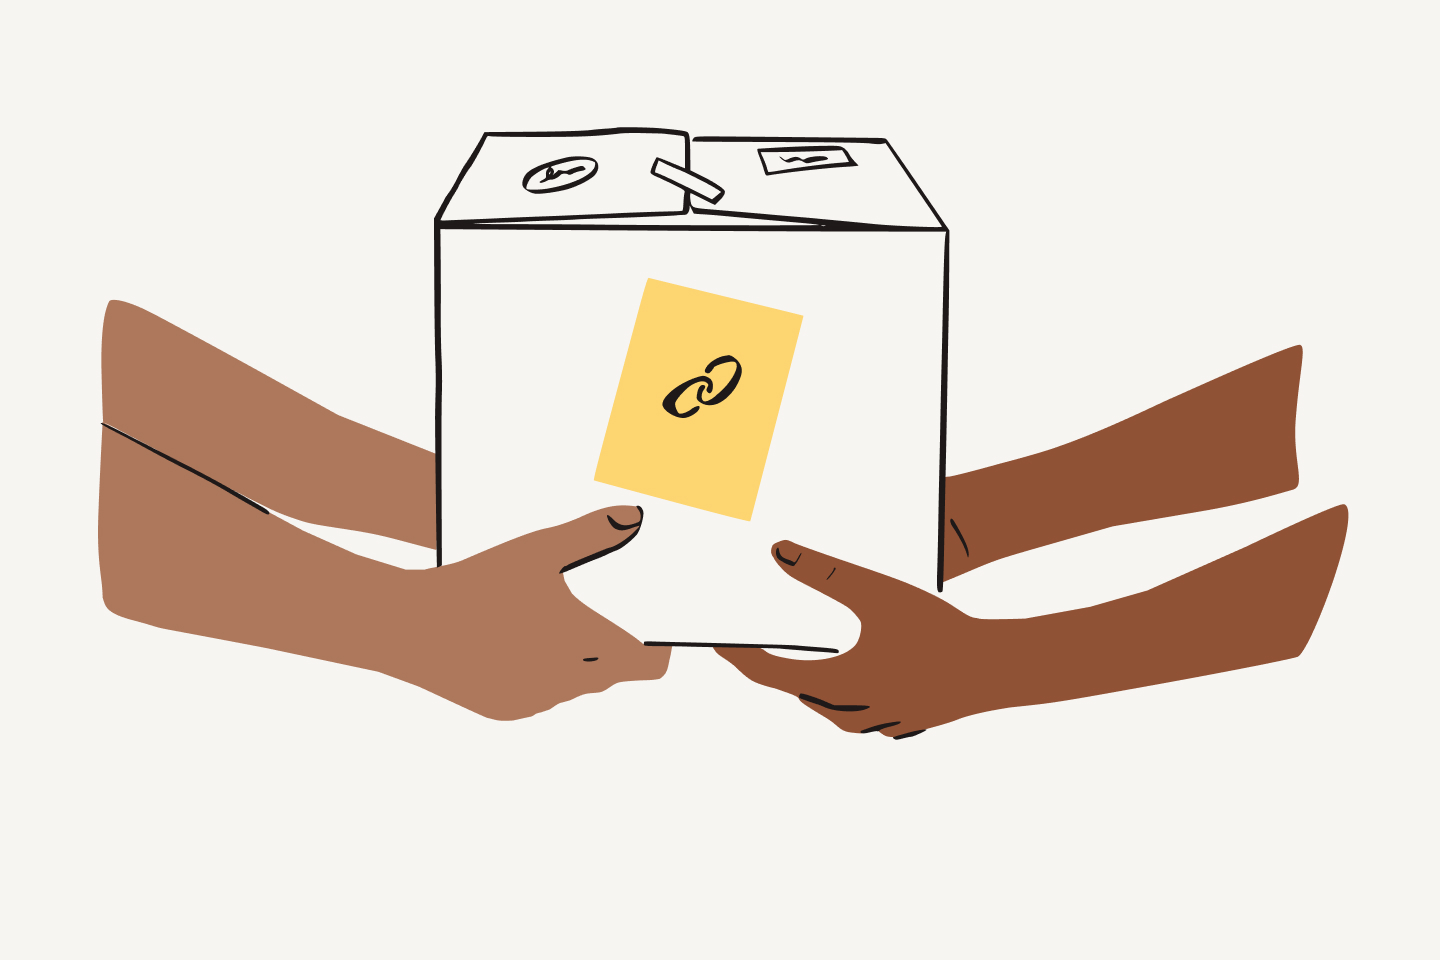 Deux personnes portant une boîte sur laquelle est collée une étiquette jaune où figure une icône représentant un lien